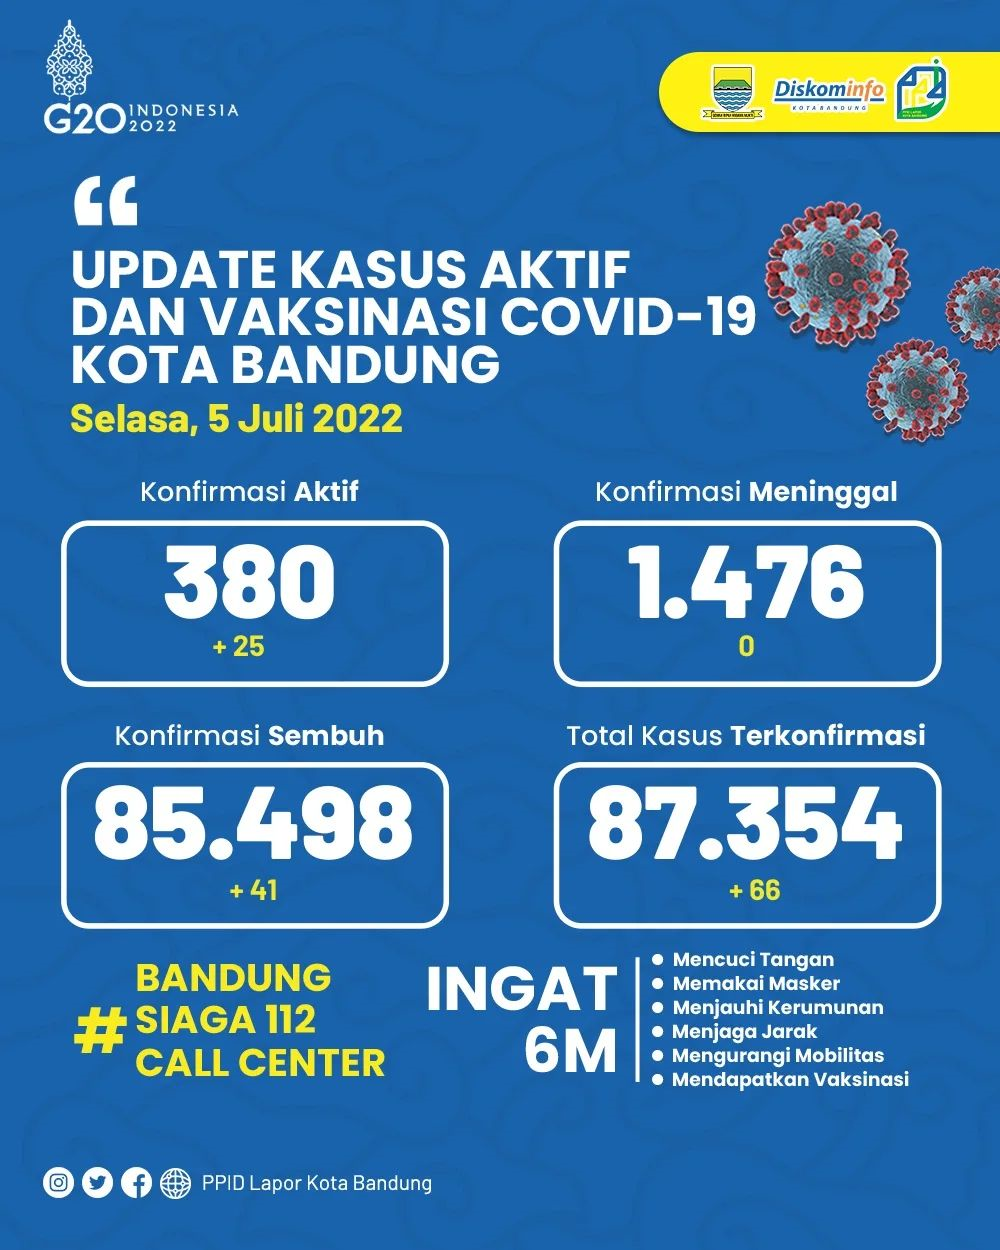 UPDATE STATISTIK COVID-19 DI KOTA BANDUNG PER TANGGAL 5 JULI 2022